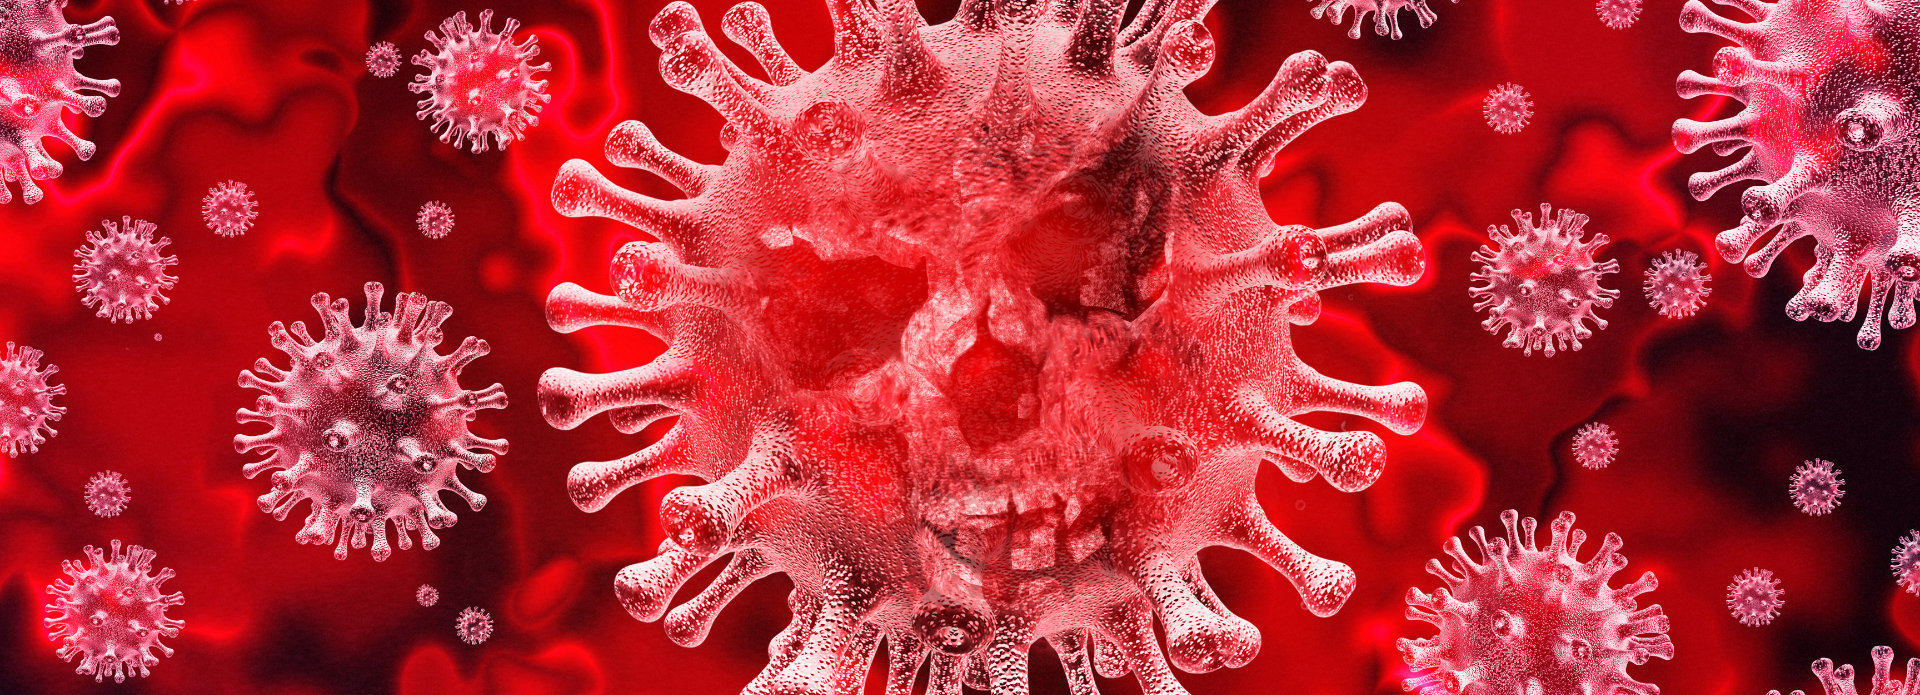 coronavirus visualisation